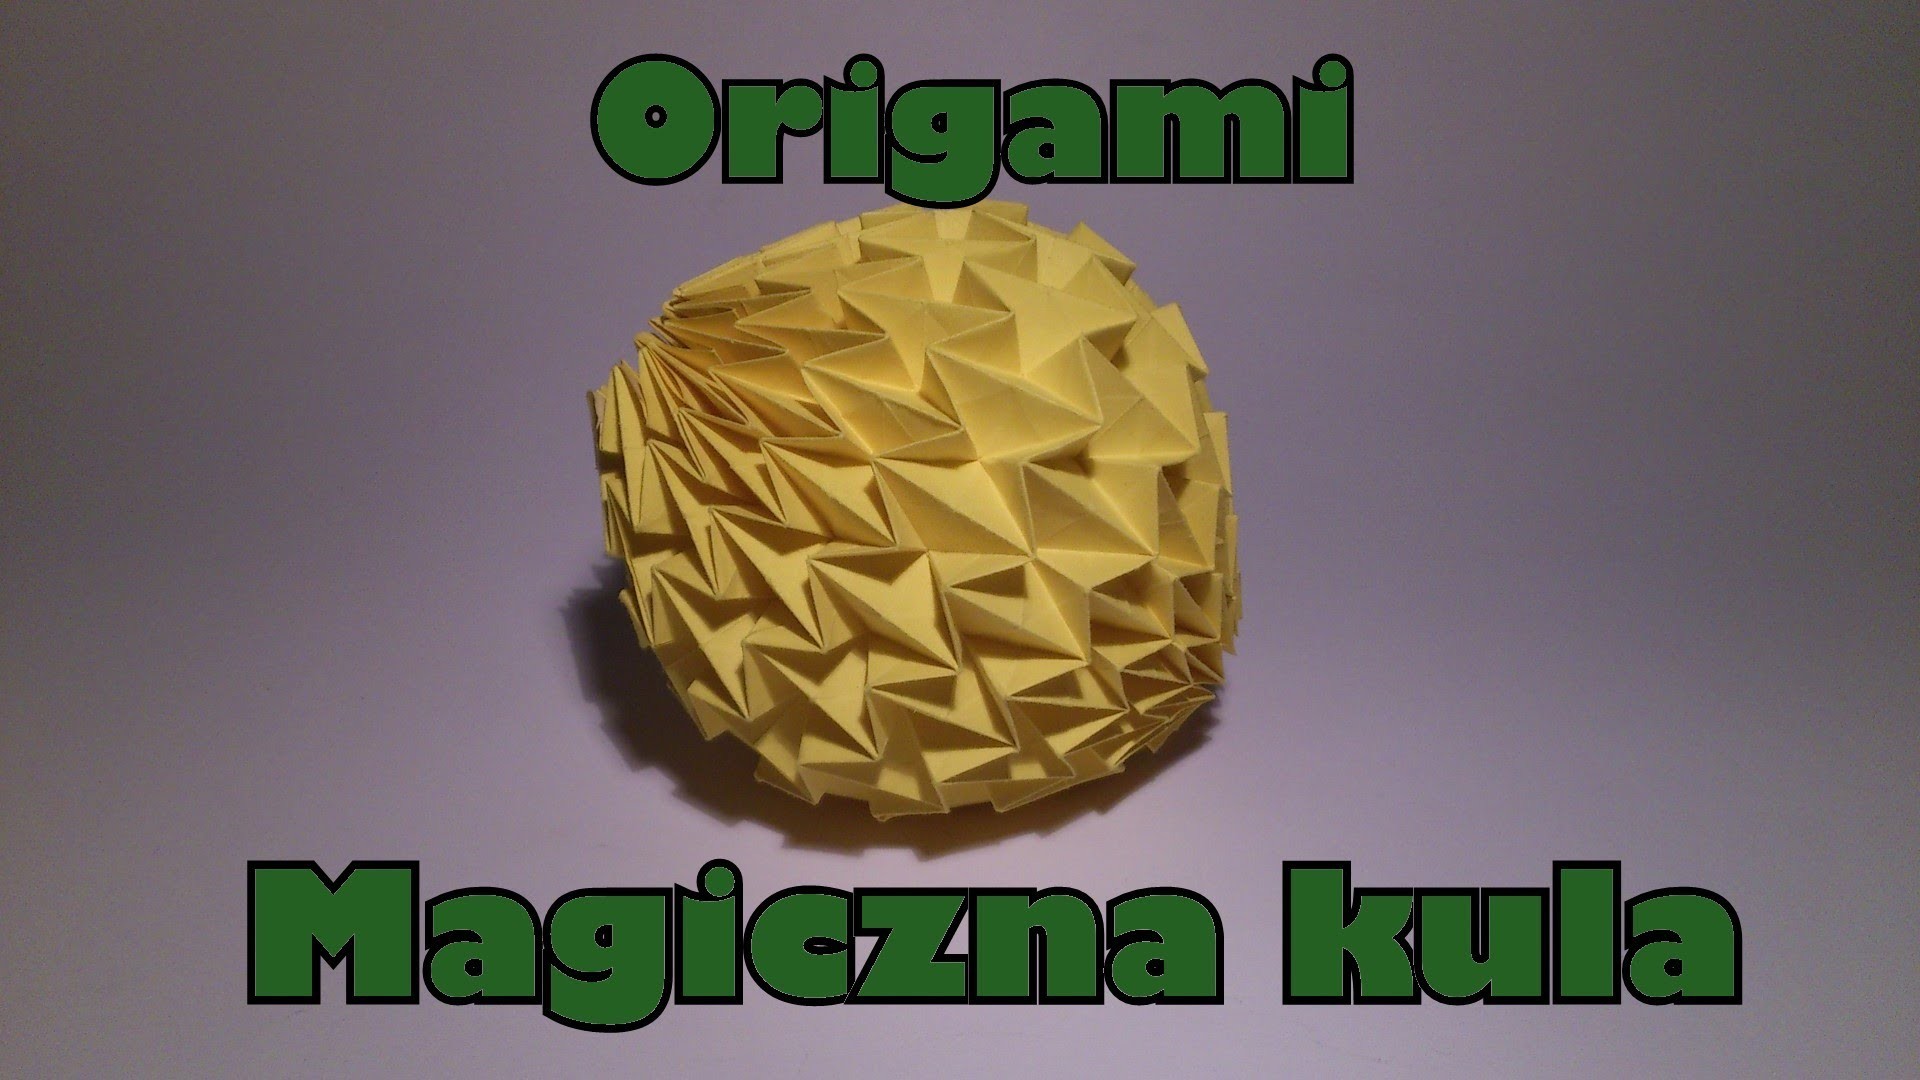 Origami - Magiczna kula